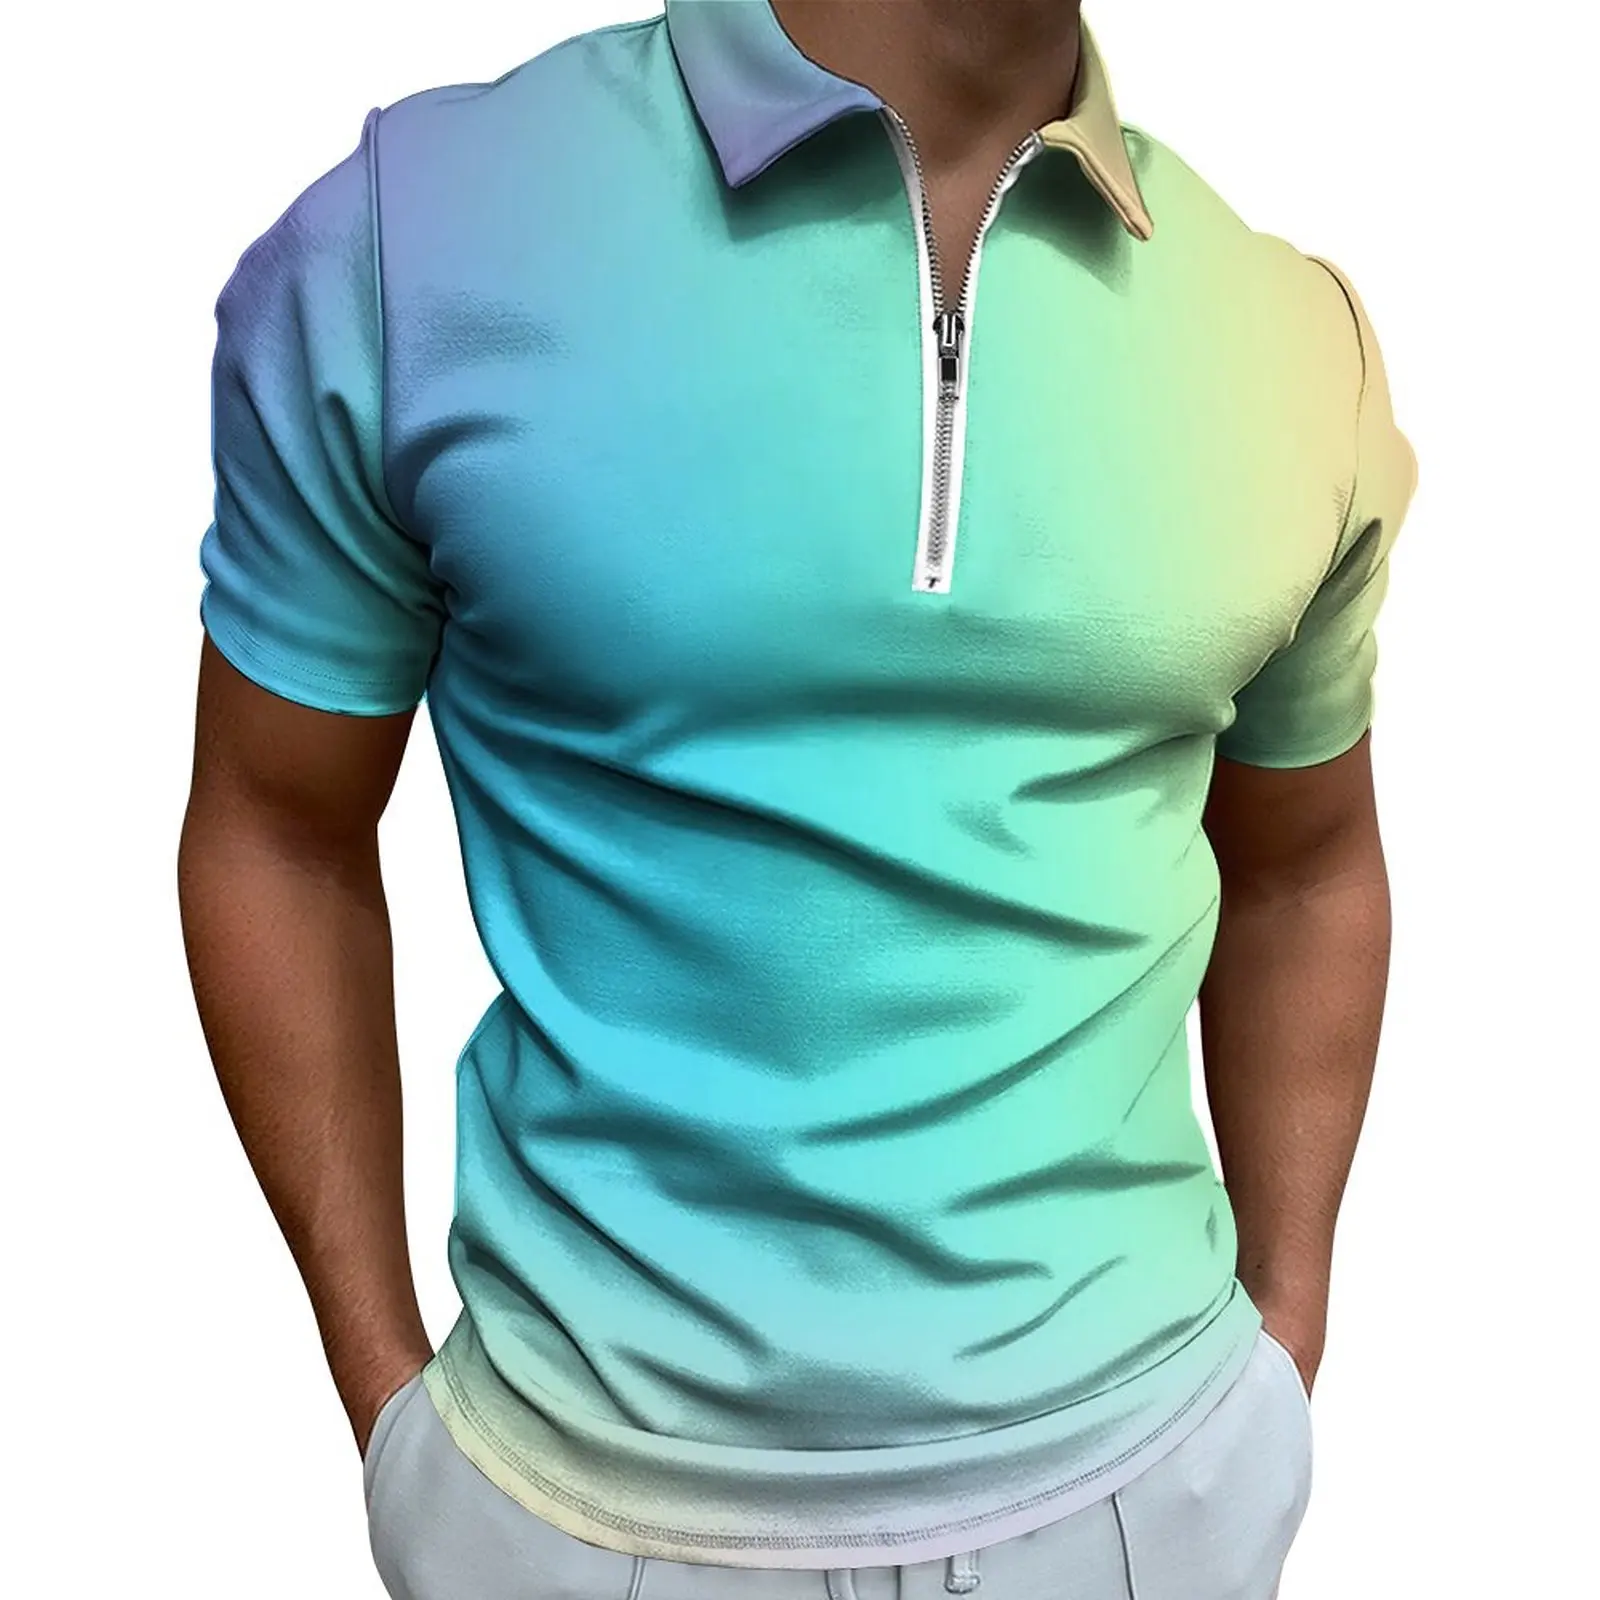 

Рубашка-поло Pastel с эффектом омбре, Повседневная пляжная рубашка с радужным принтом, модные мужские футболки с коротким рукавом и графическим принтом на молнии